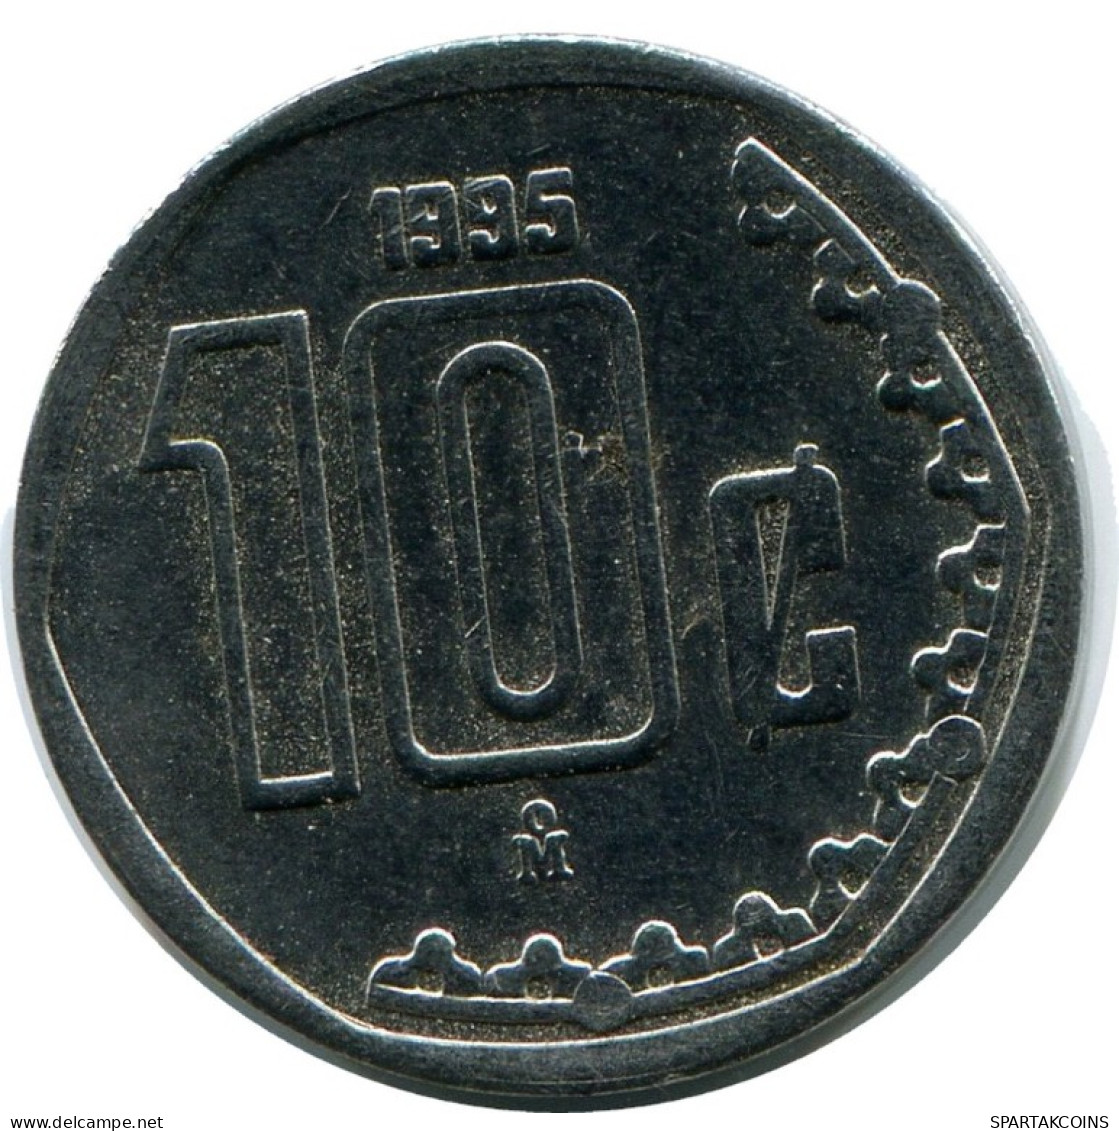 10 CENTAVOS 1995 MEXICO Coin #AH409.5.U.A - Messico